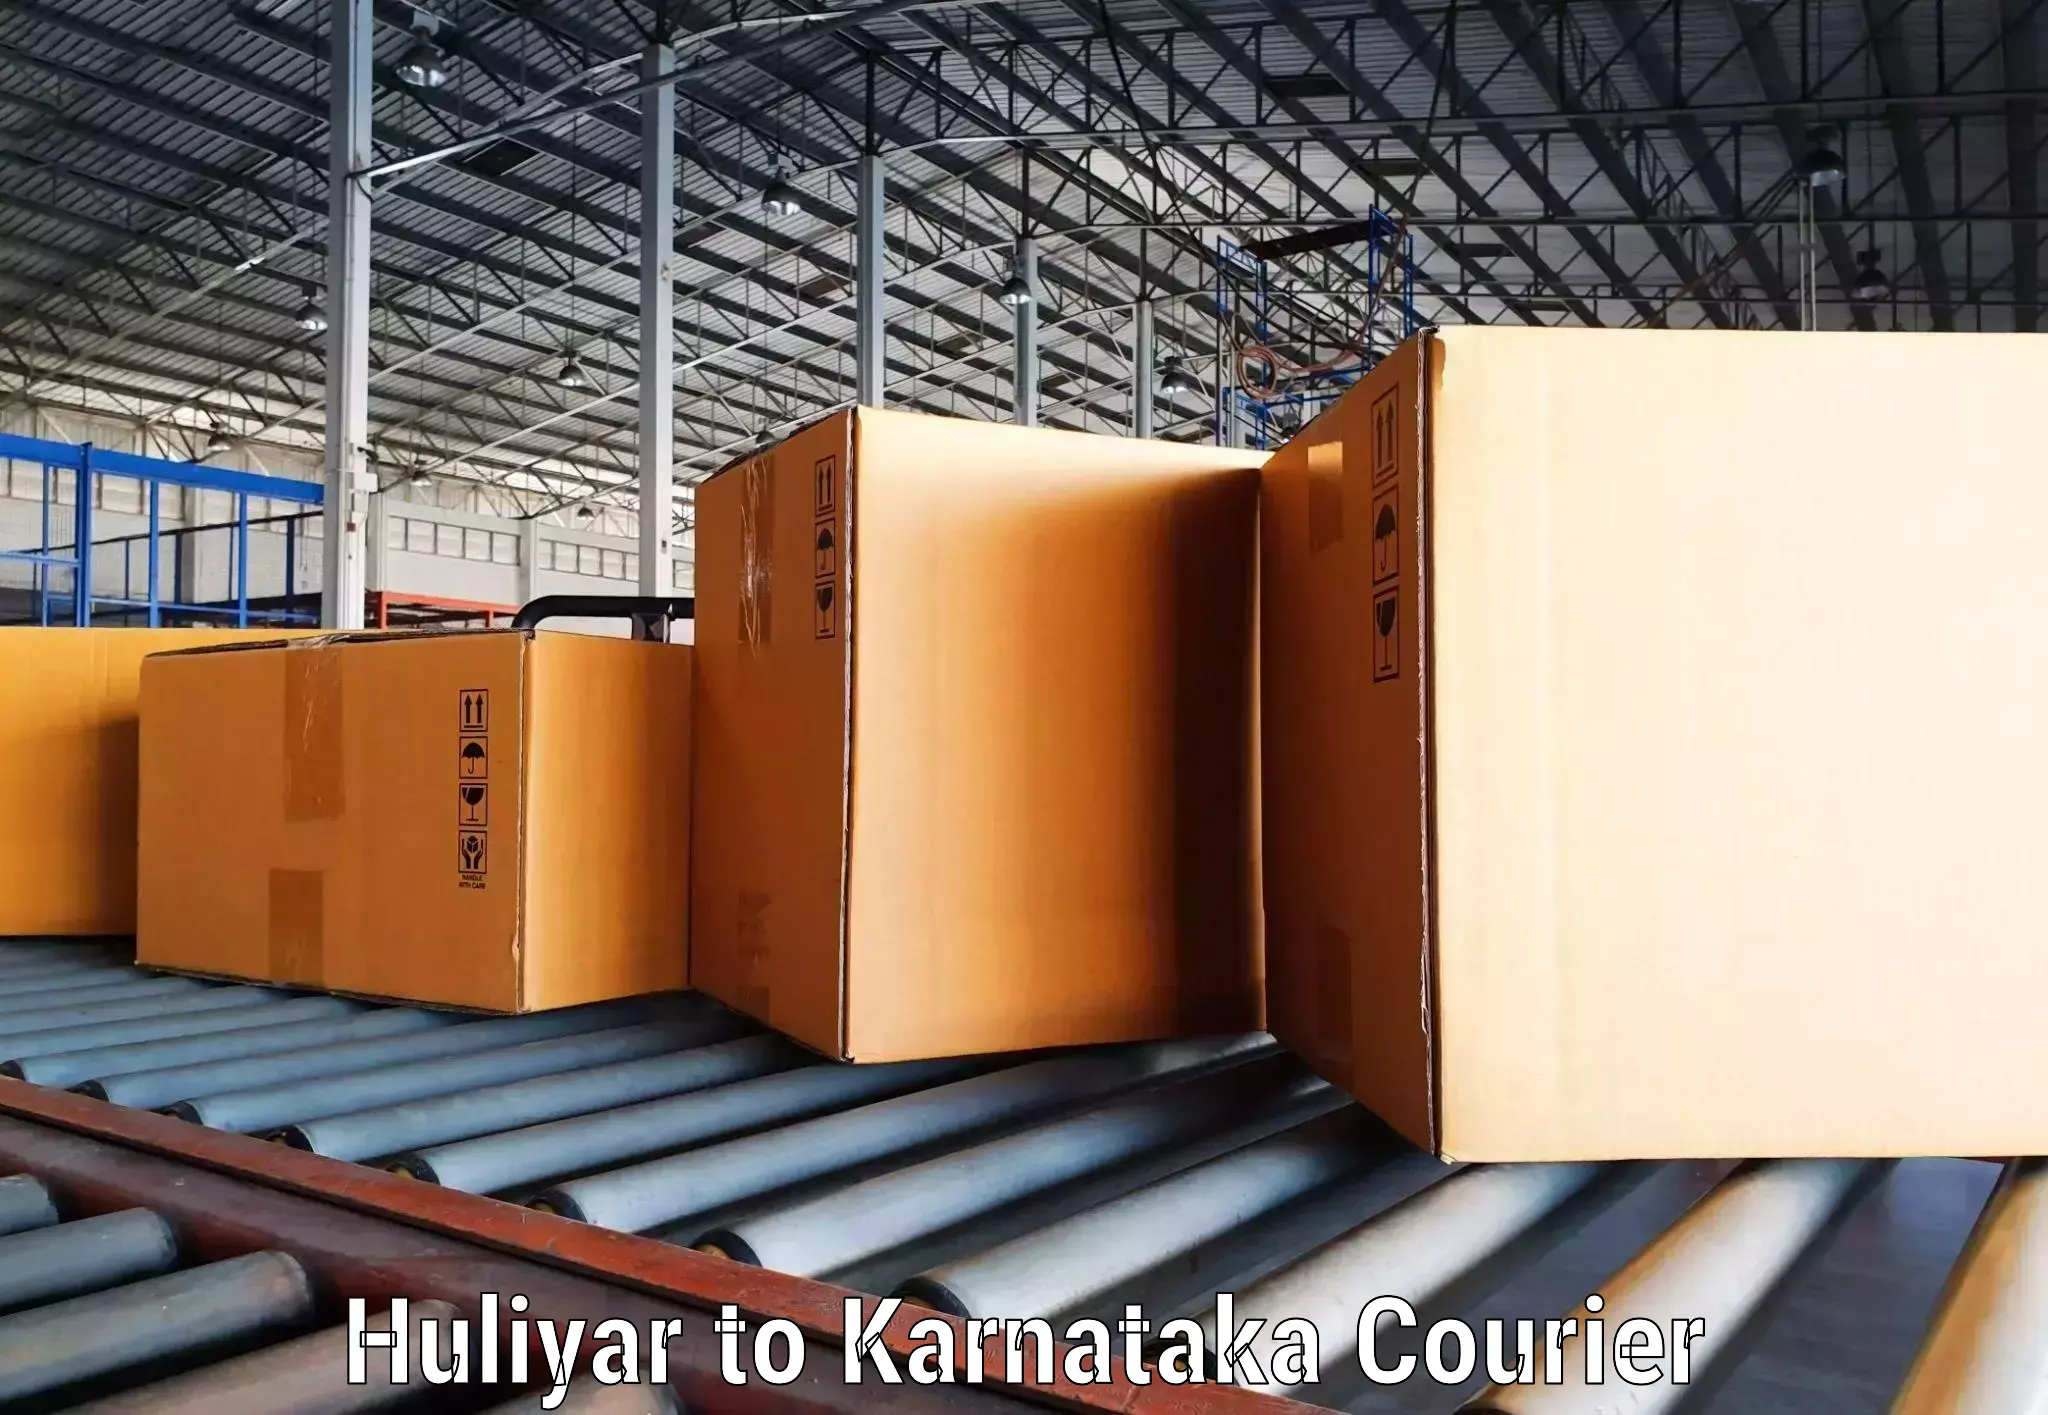 Modern courier technology Huliyar to Ugar